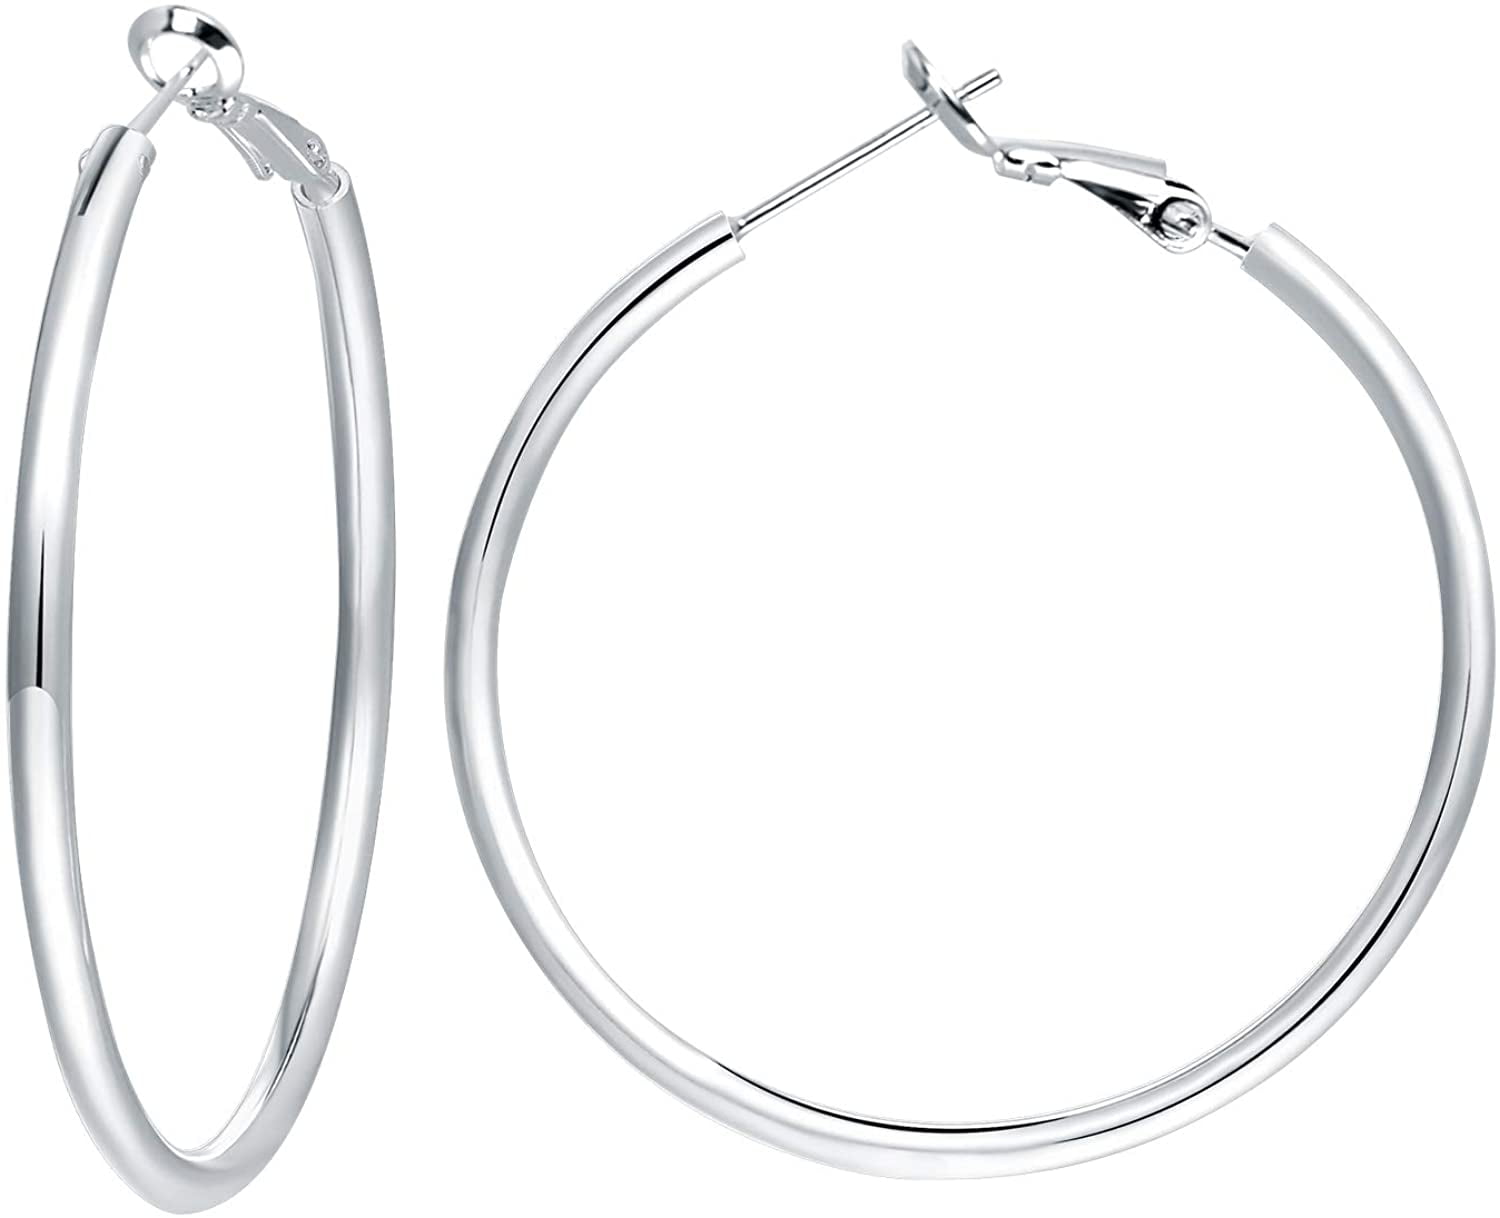 Earrings & Studs | Big Silver Hoop Earrings | Freeup